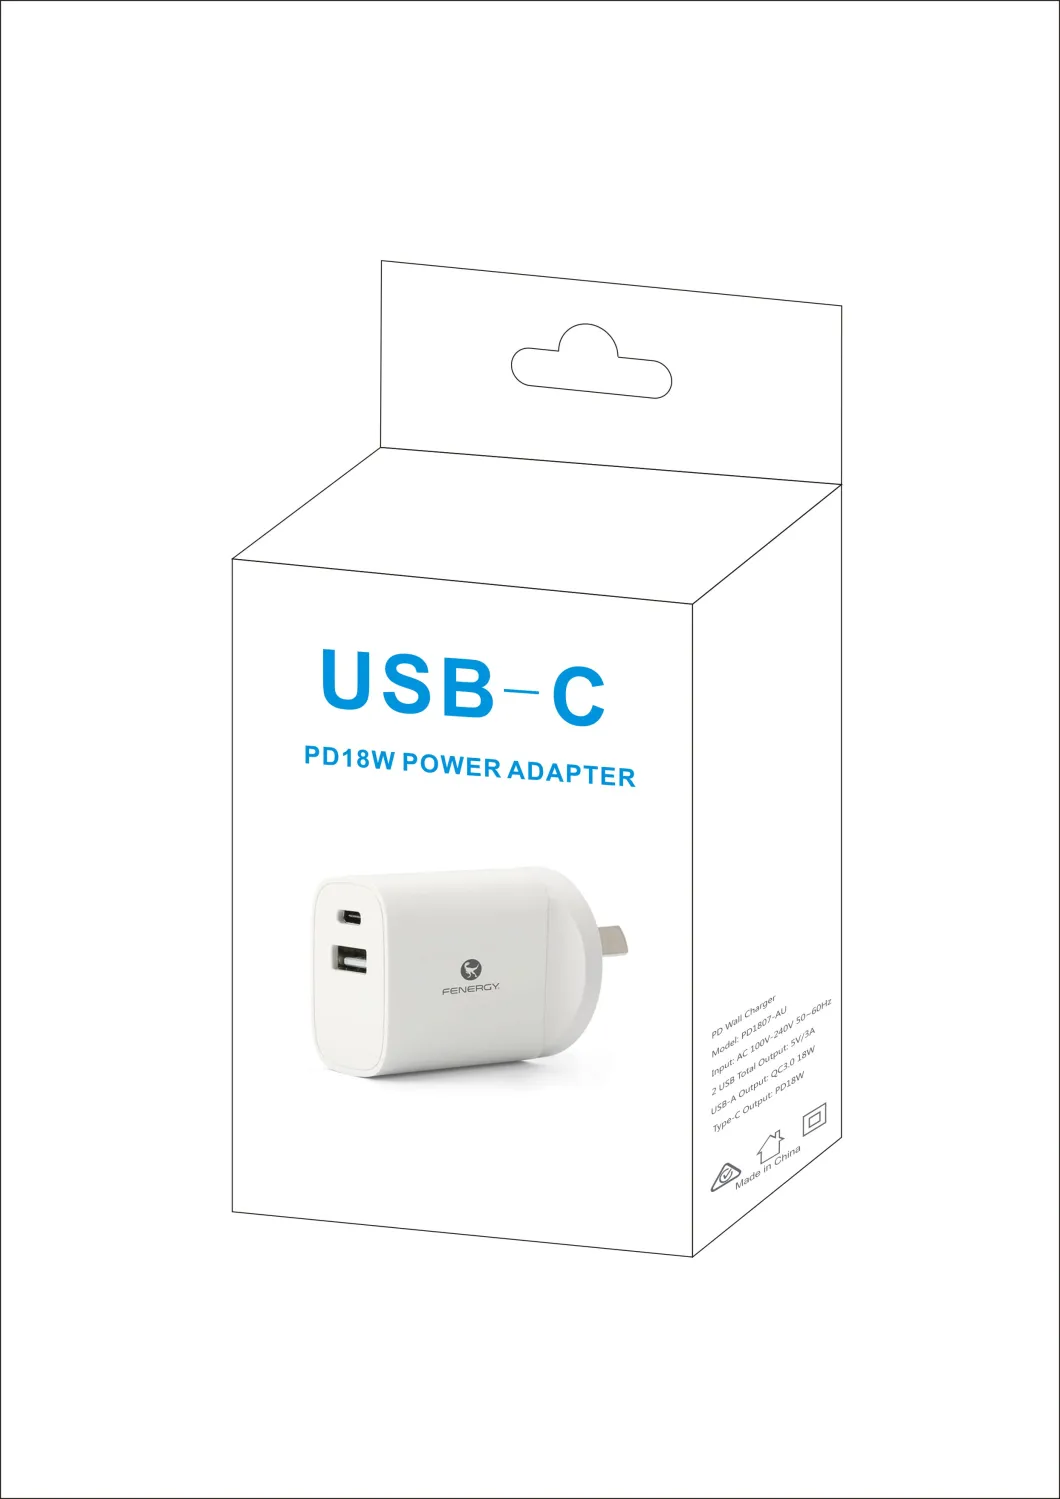 USB Charger Mini Portable Charging Station USB Wall Plug 2.4A Output